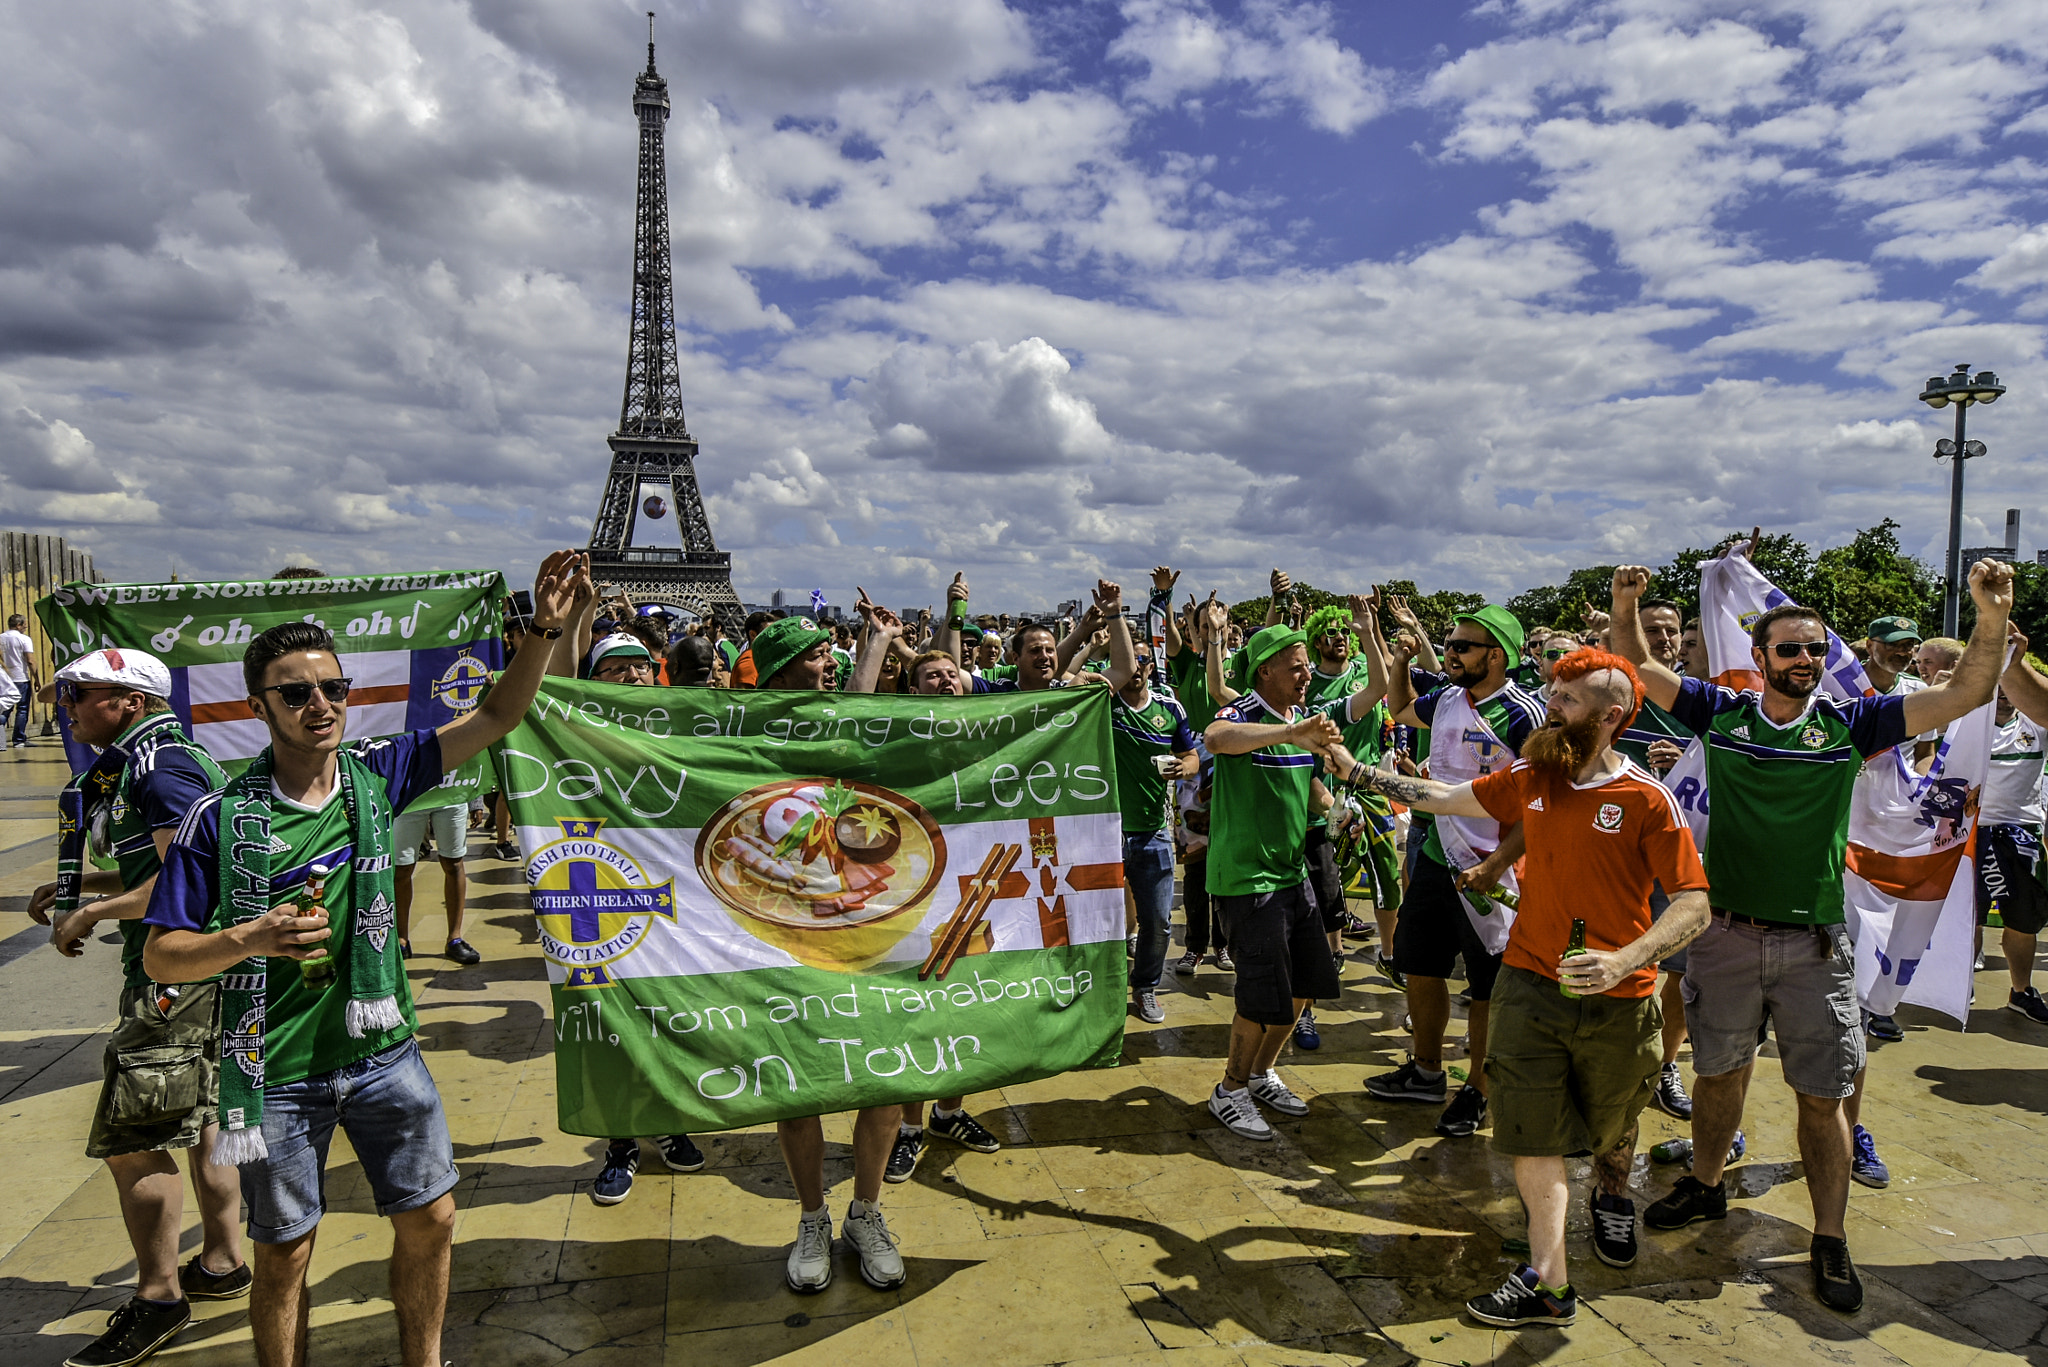 Football Fans, Fun and Sun in Paris